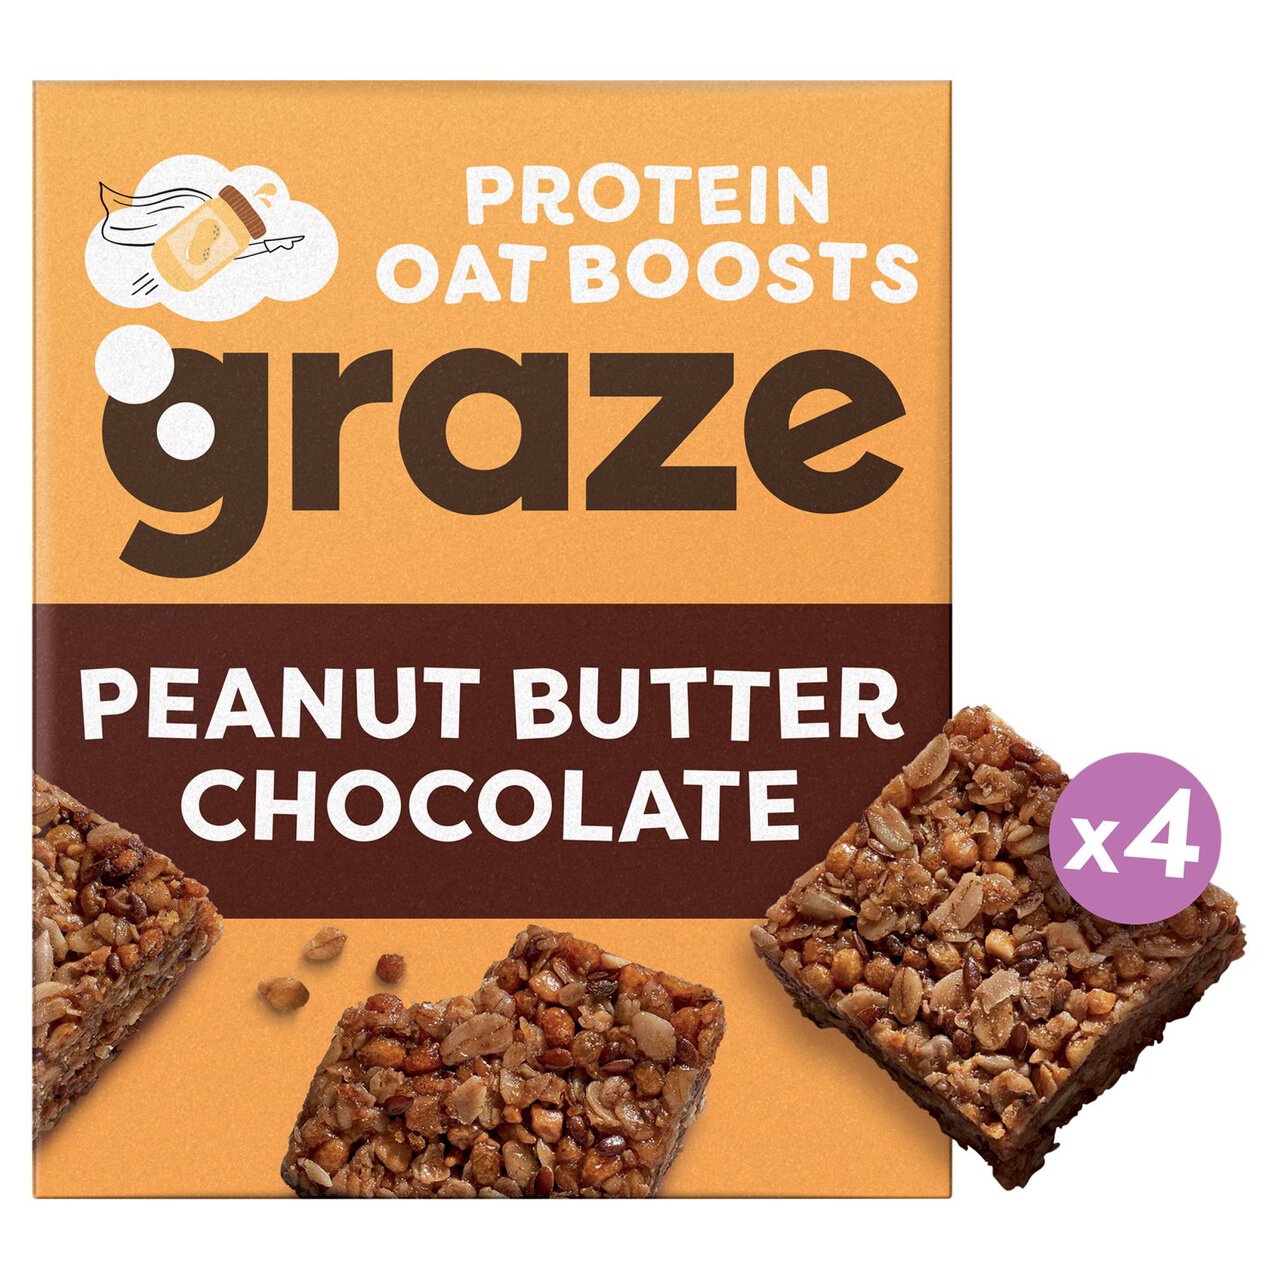 Graze Peanut Butter Oat Boosts 4 per pack